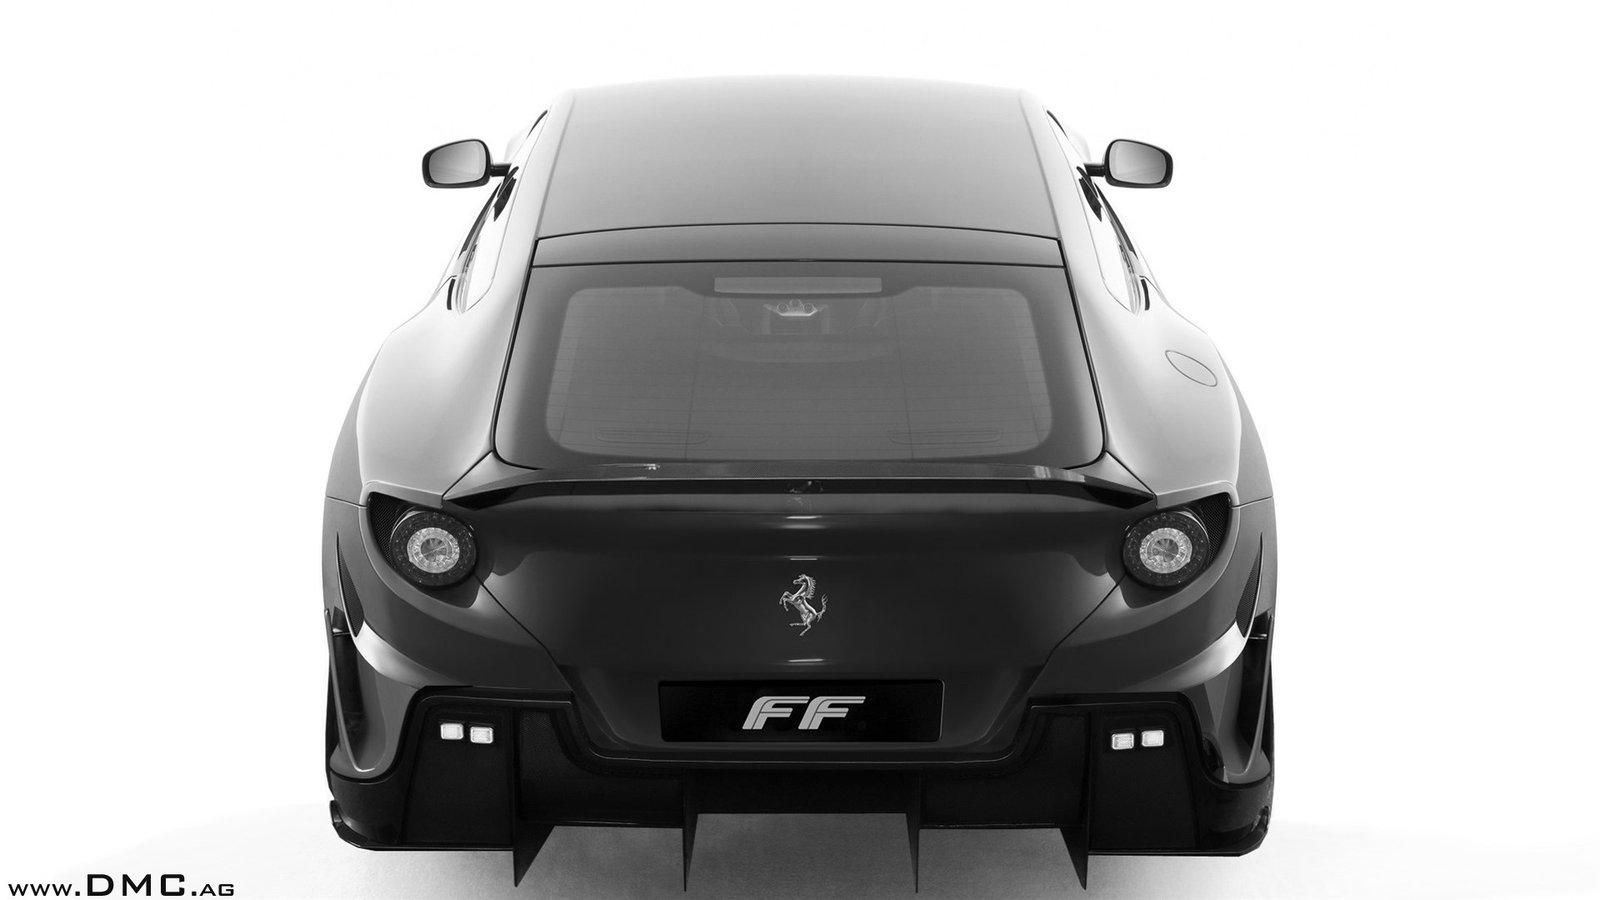 2012 Ferrari FF Maximus by DMC